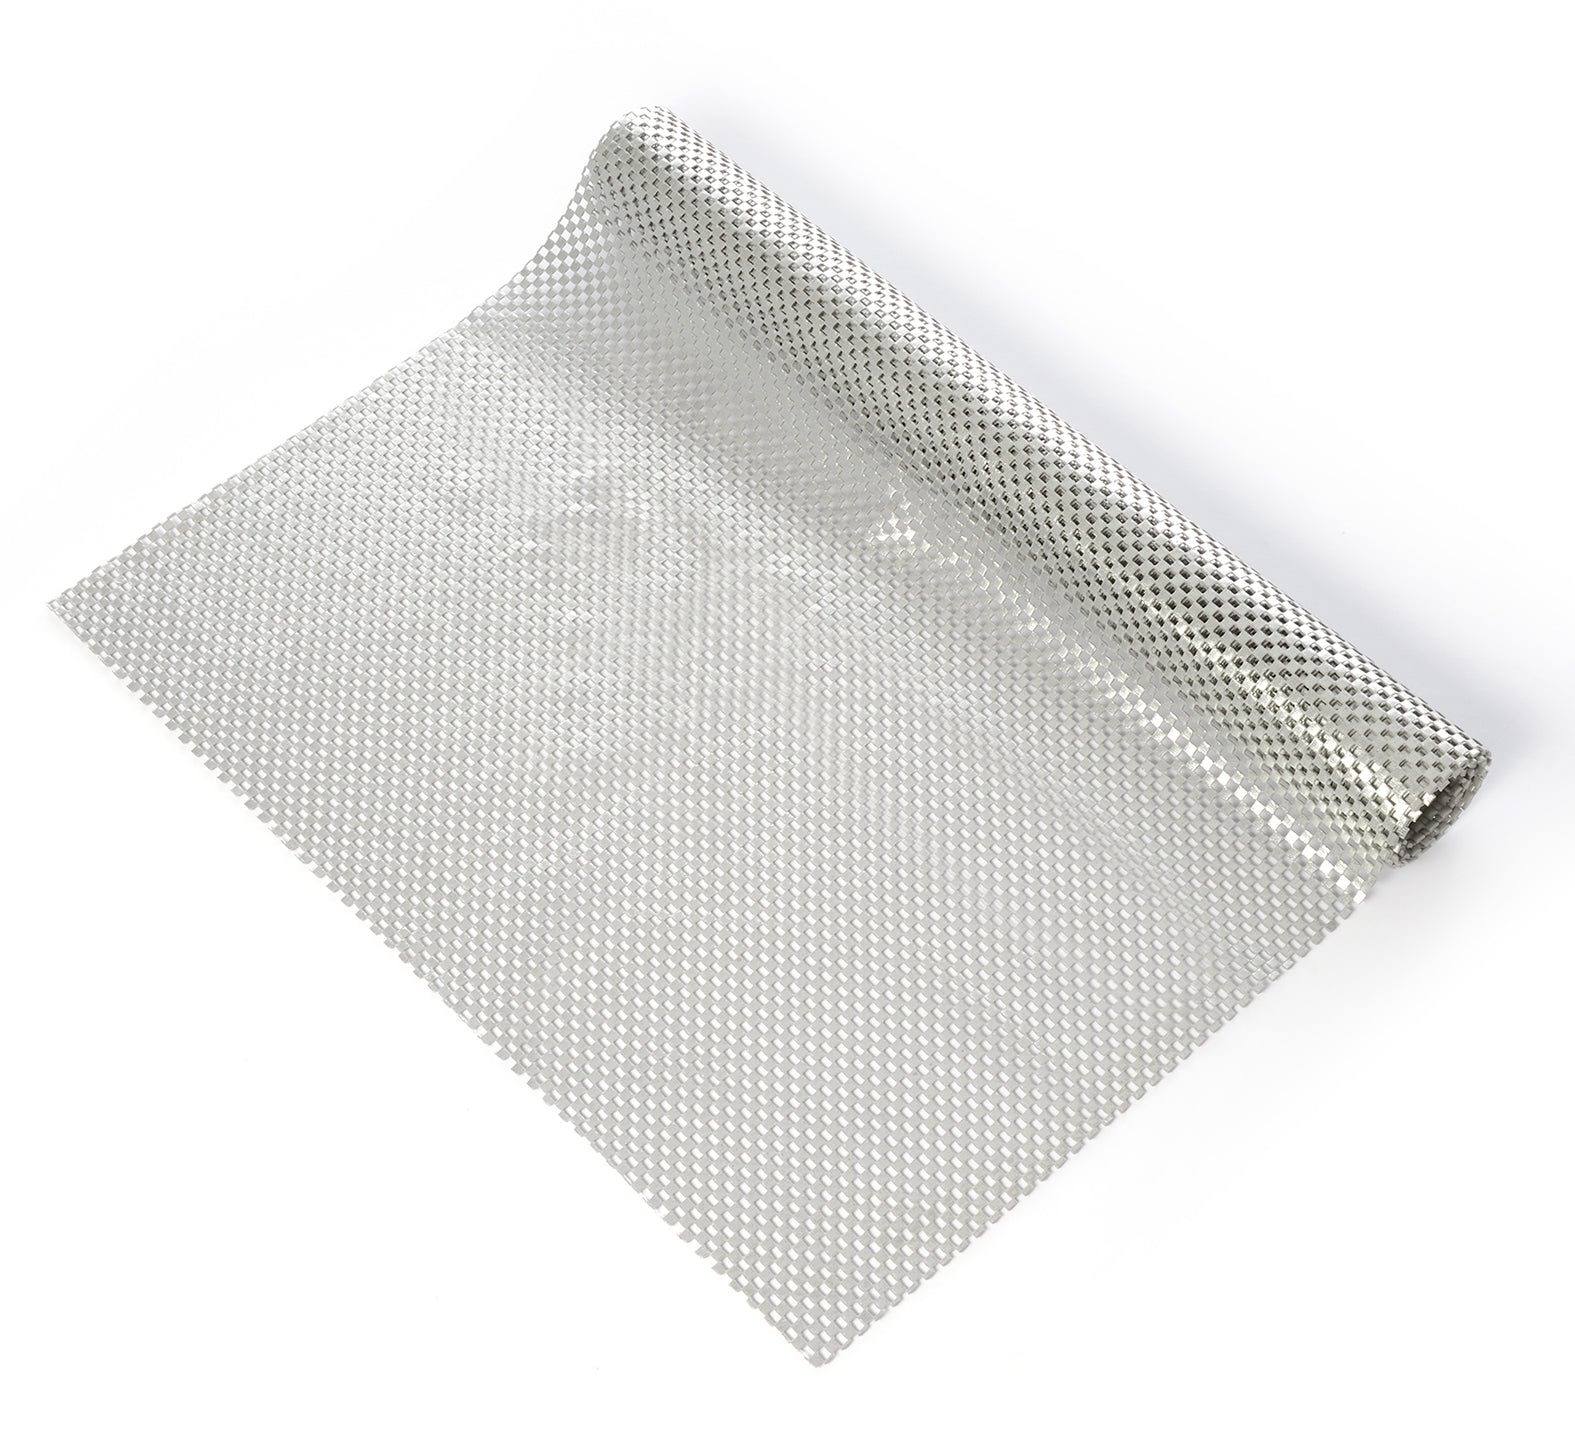 Con-Tact Brand Grip, 05F-C6F59-06, Non-Adhesive Non-Slip Shelf